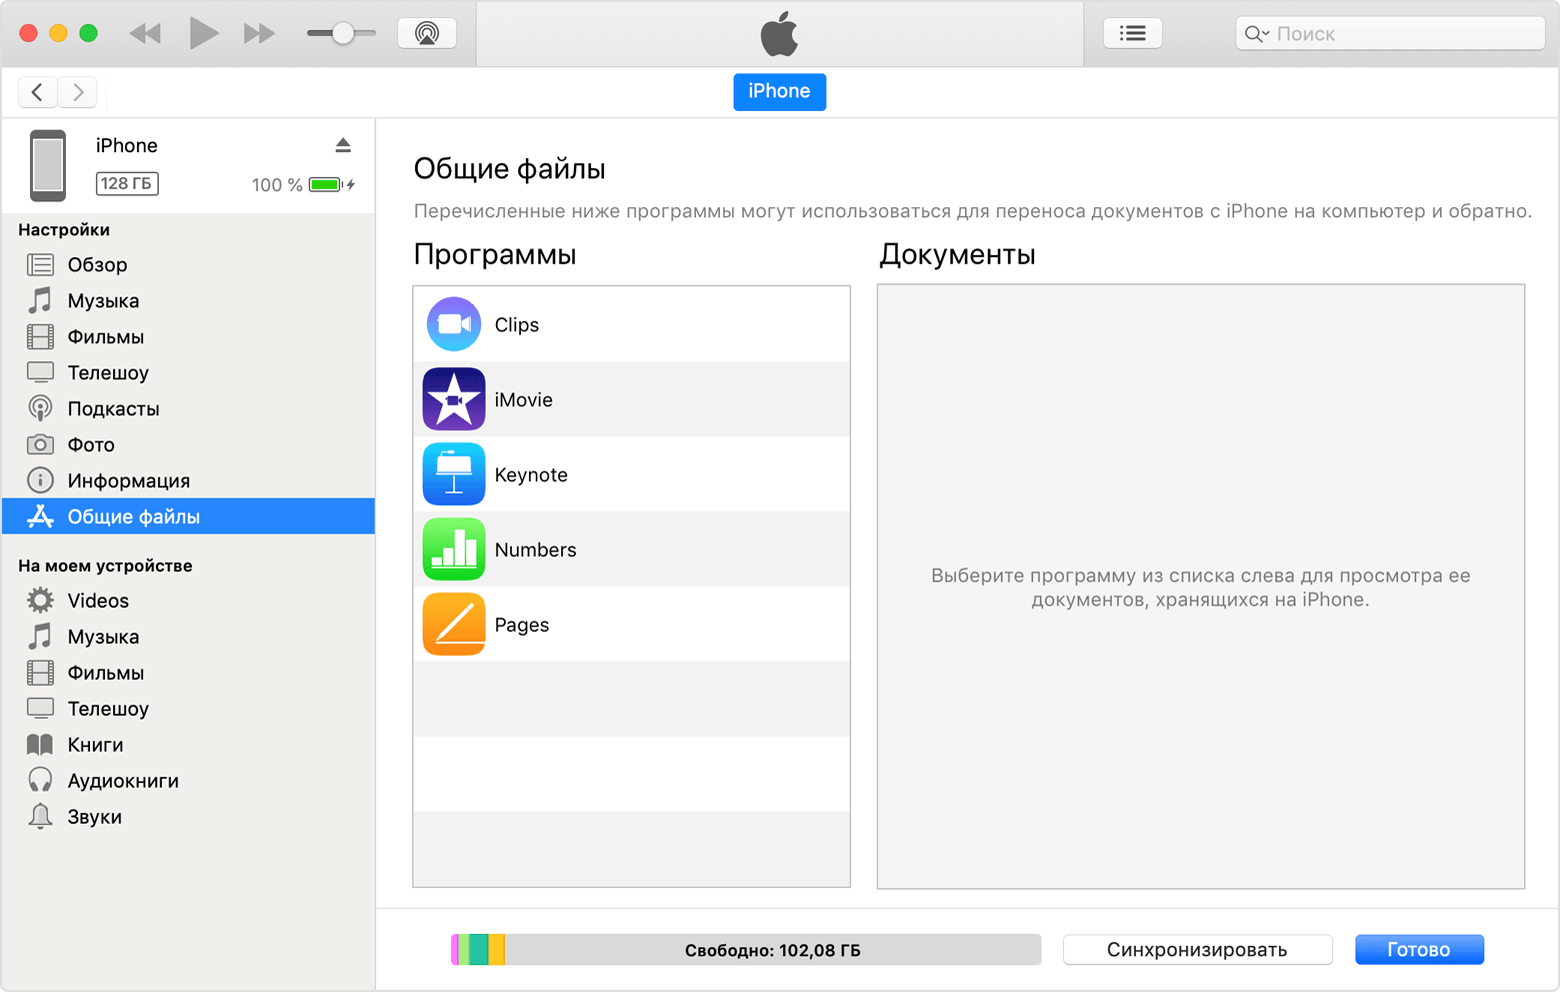 Окно iTunes с подключенным iPhone и выбранным в списке элементом «Общие файлы».